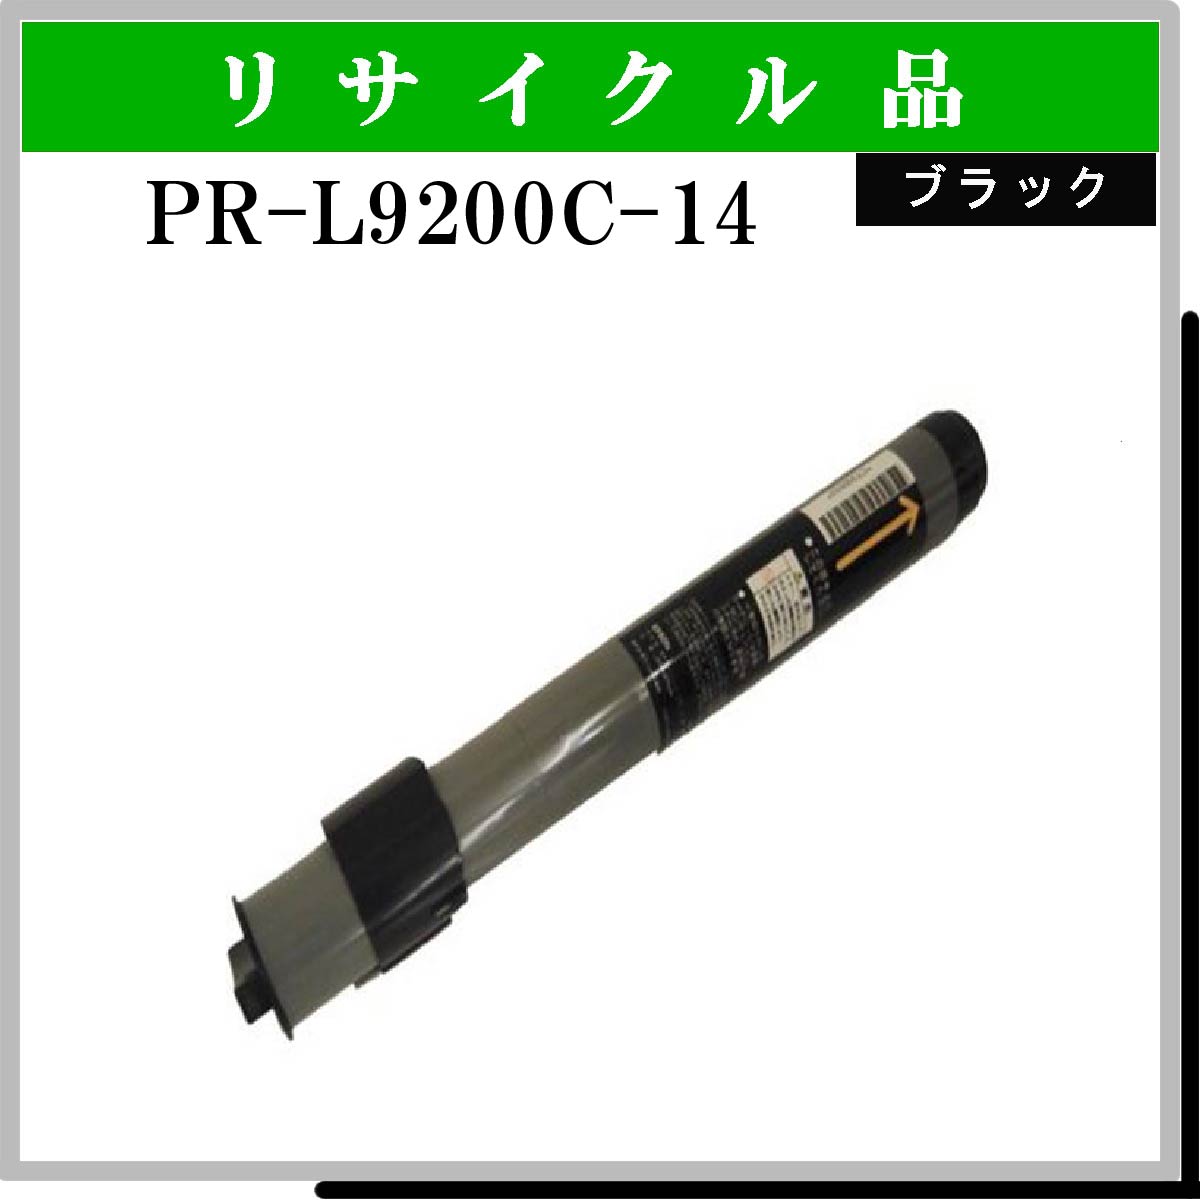 PR-L9200C-14